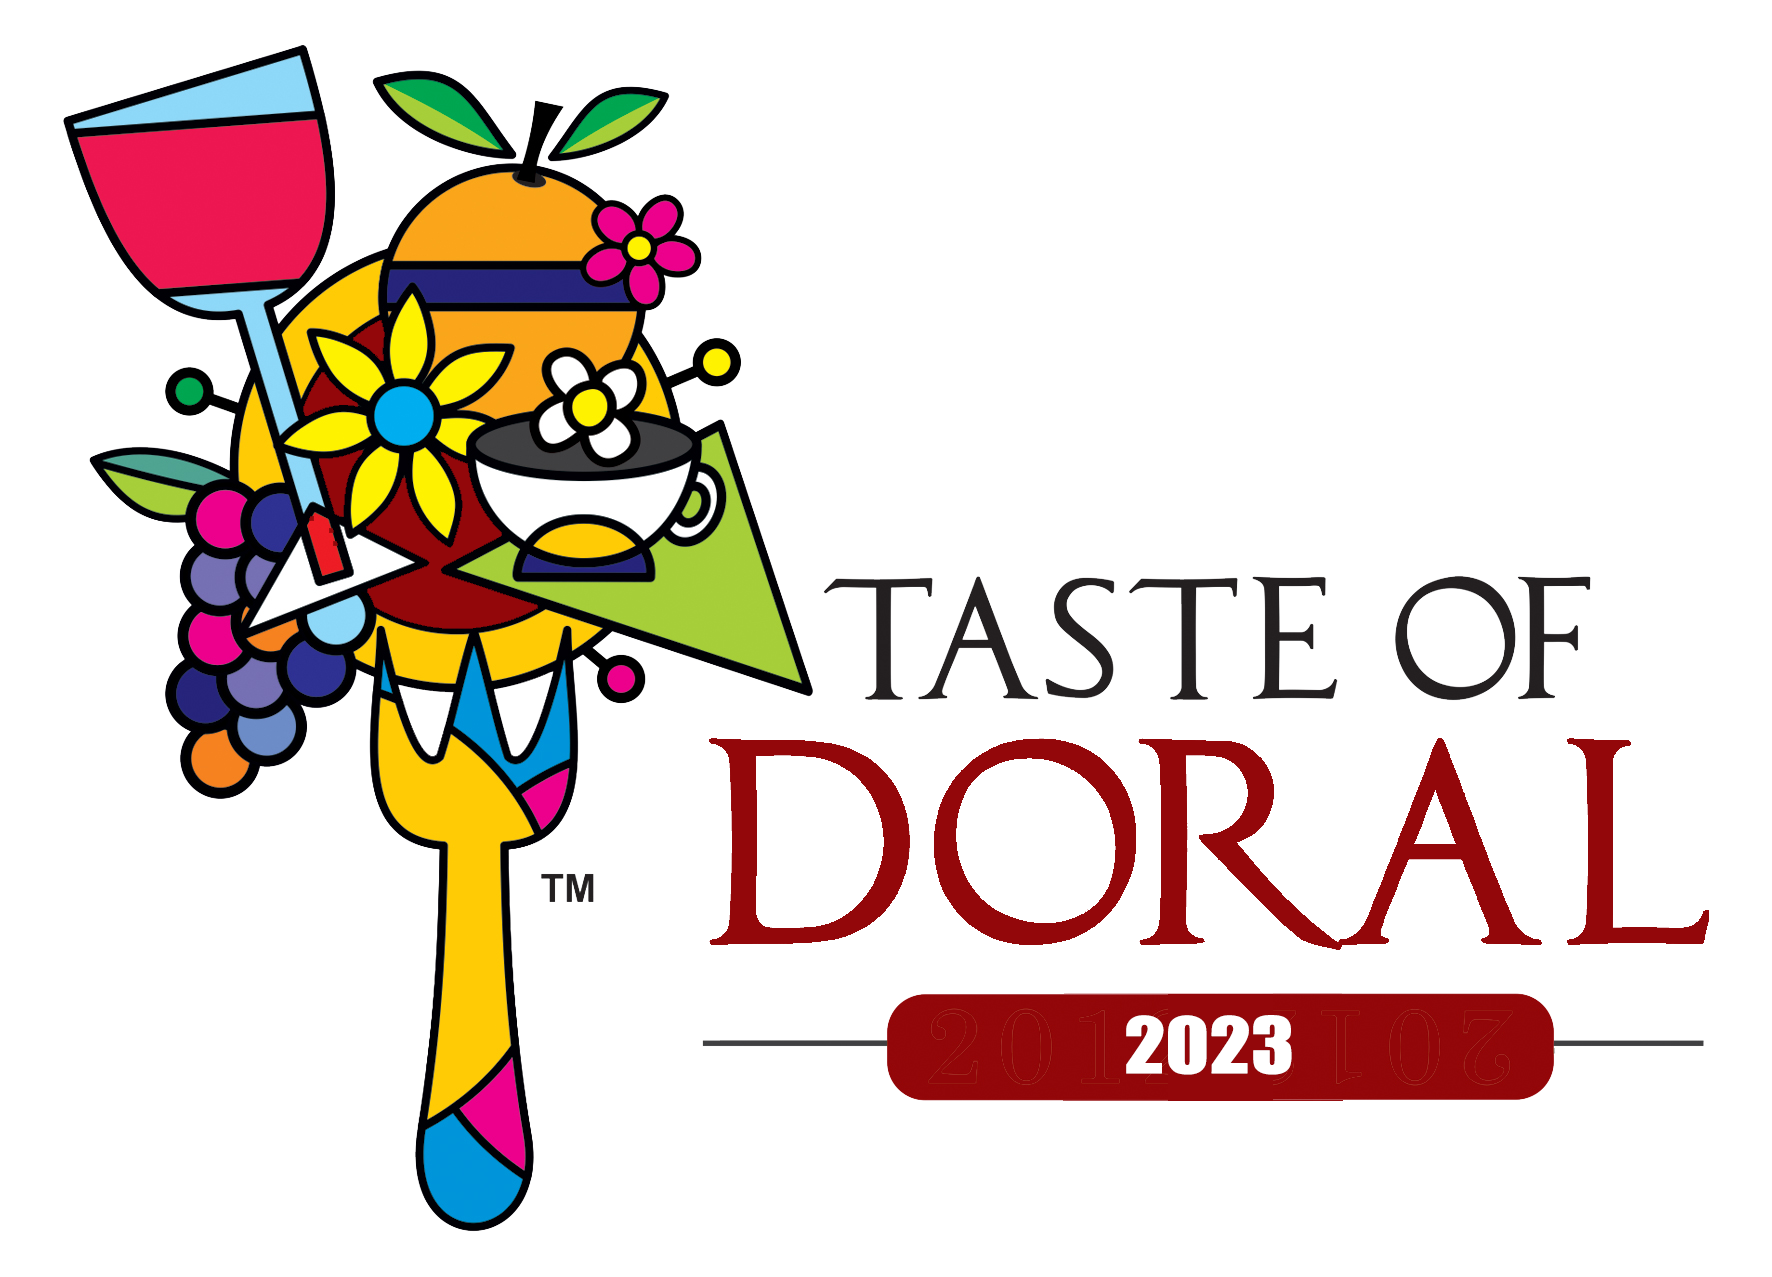 Taste of Doral / Doral Restaurant Week 2023. Featuring Doral's Best Restaurants.